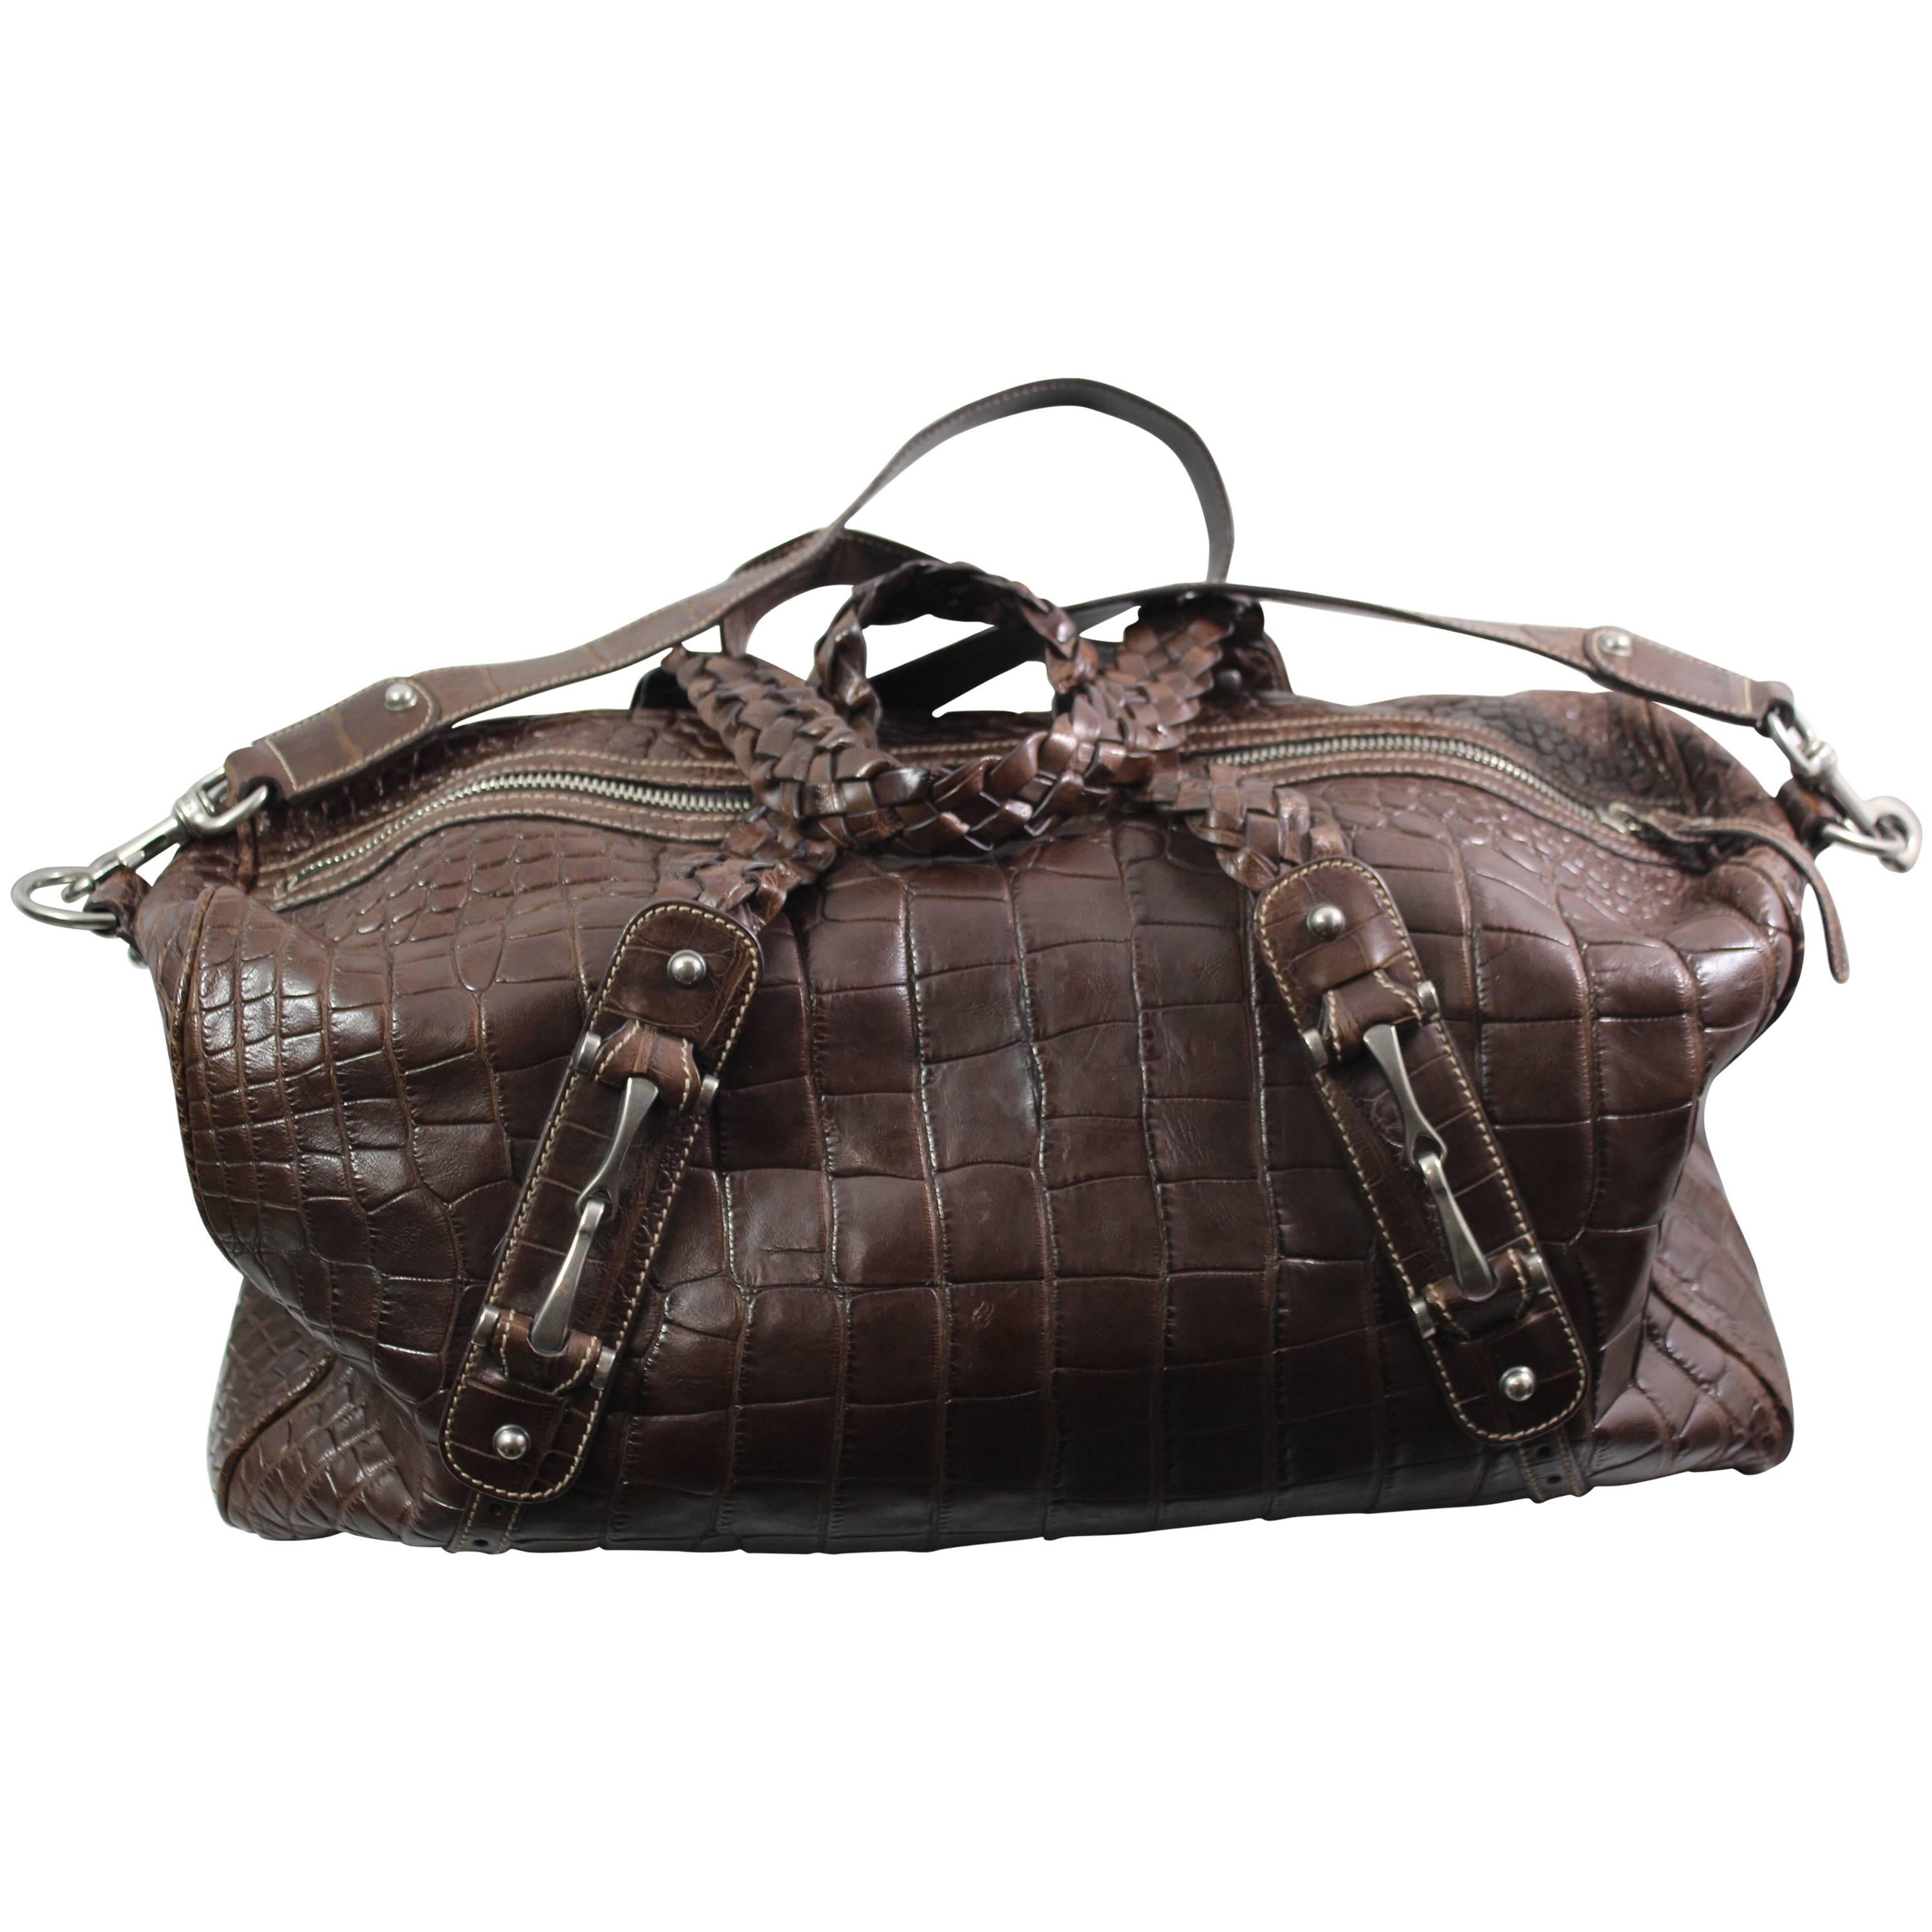 New 2007 Gucci Men's Cocco Nappato crocodile Travel Bag with Detachable Strap